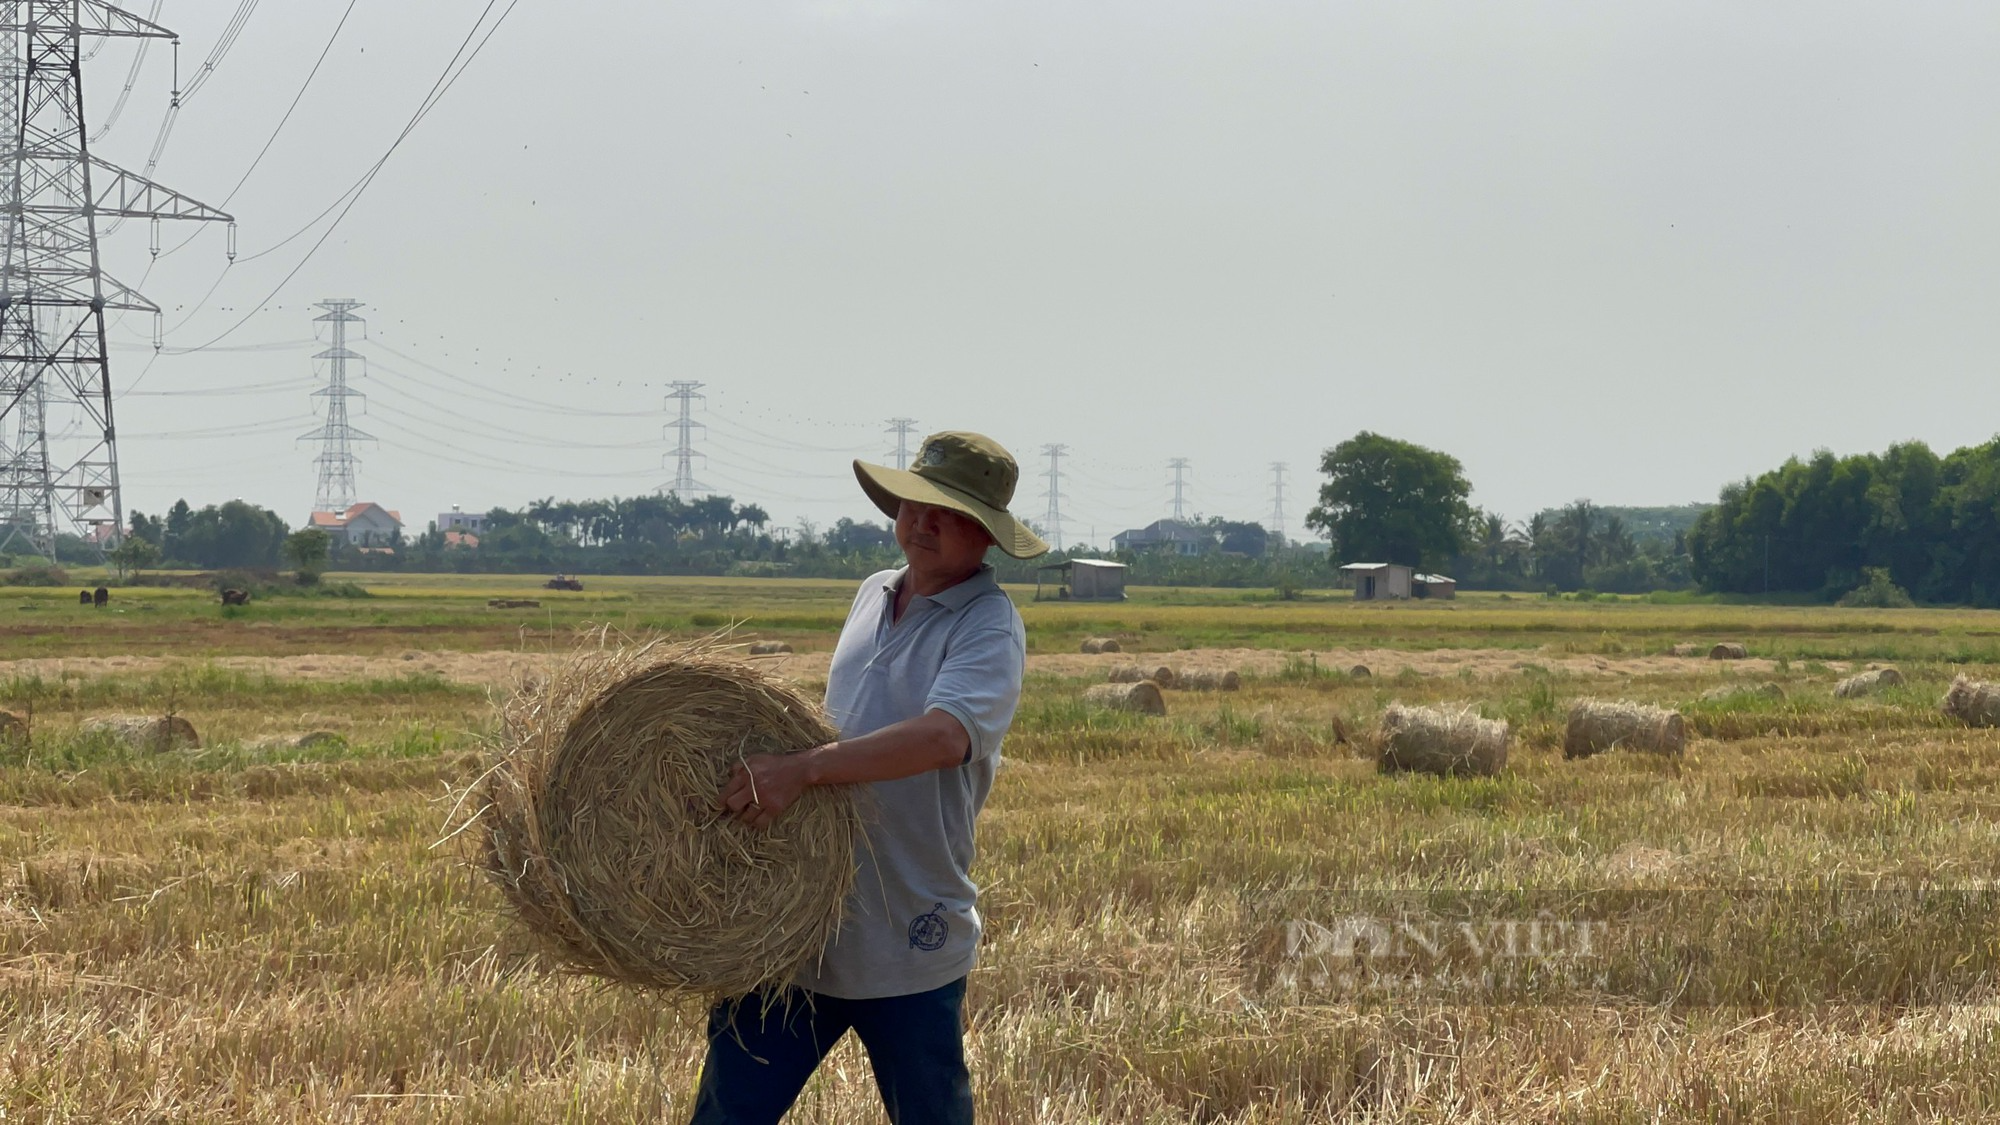 Bán rơm rạ, nông dân Đồng Nai thu về 2,5 triệu/ha - Ảnh 3.